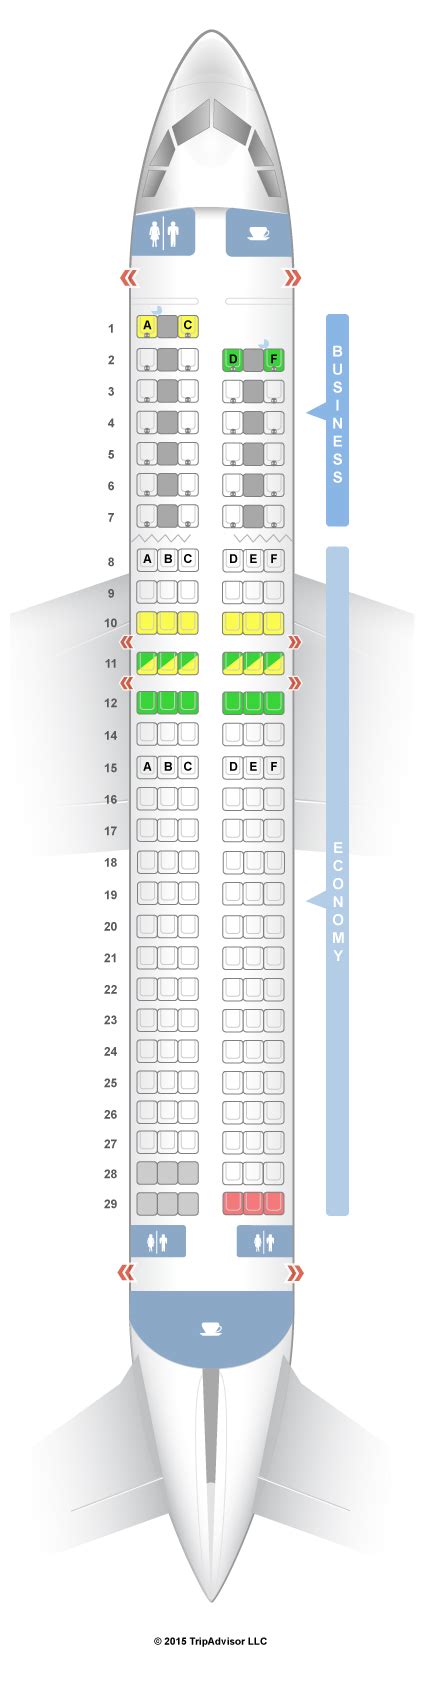 Seatguru Seat Map Air France Airbus A320 320 V1